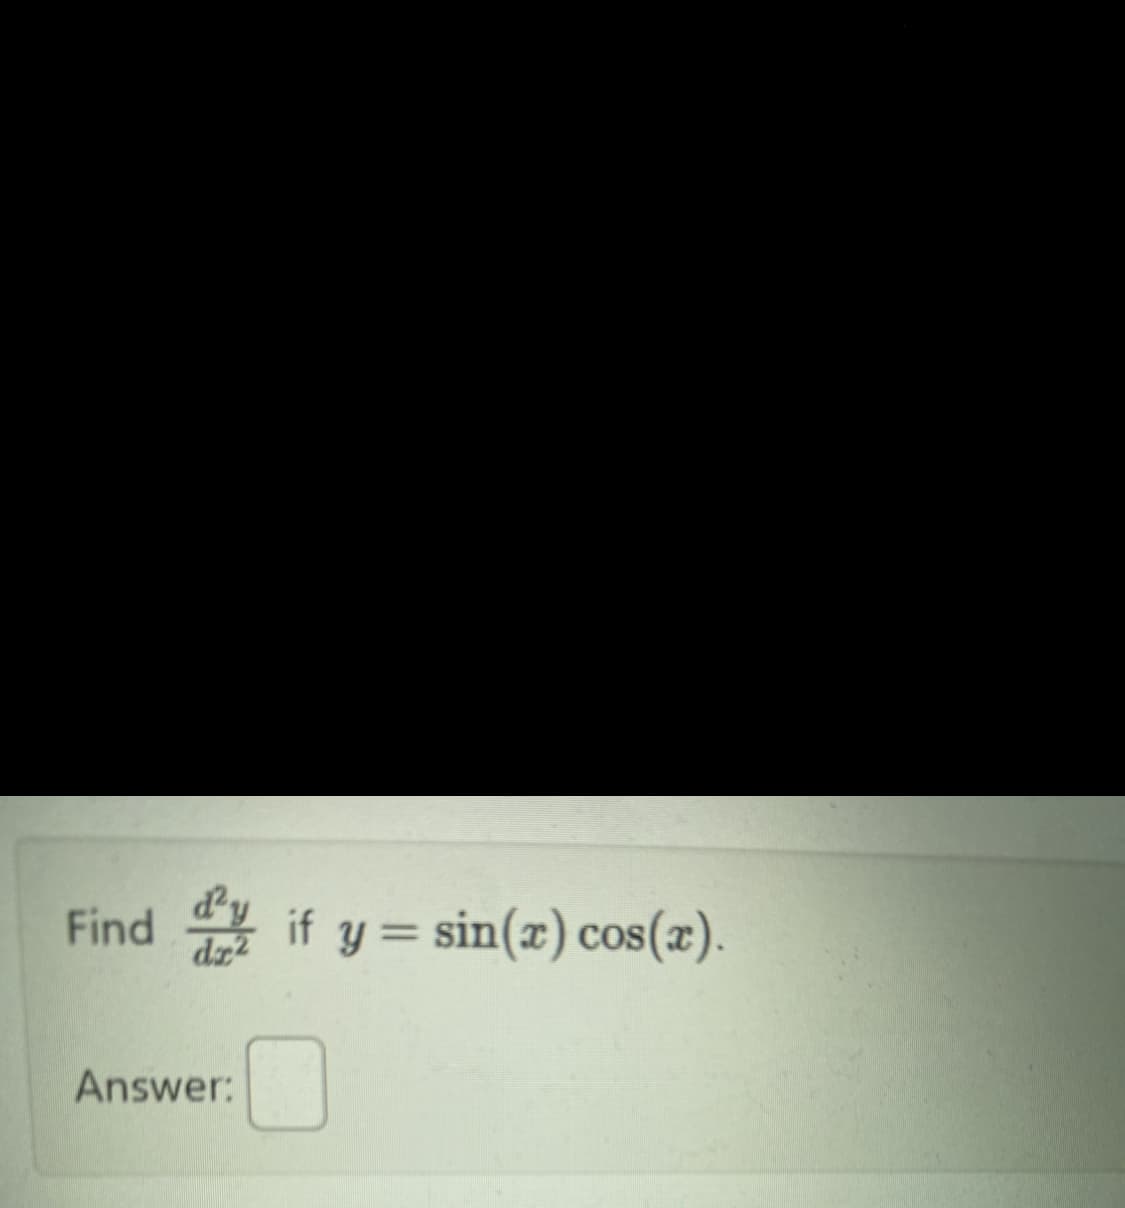 Find if y=sin(x) cos(x).
dr2
Answer: